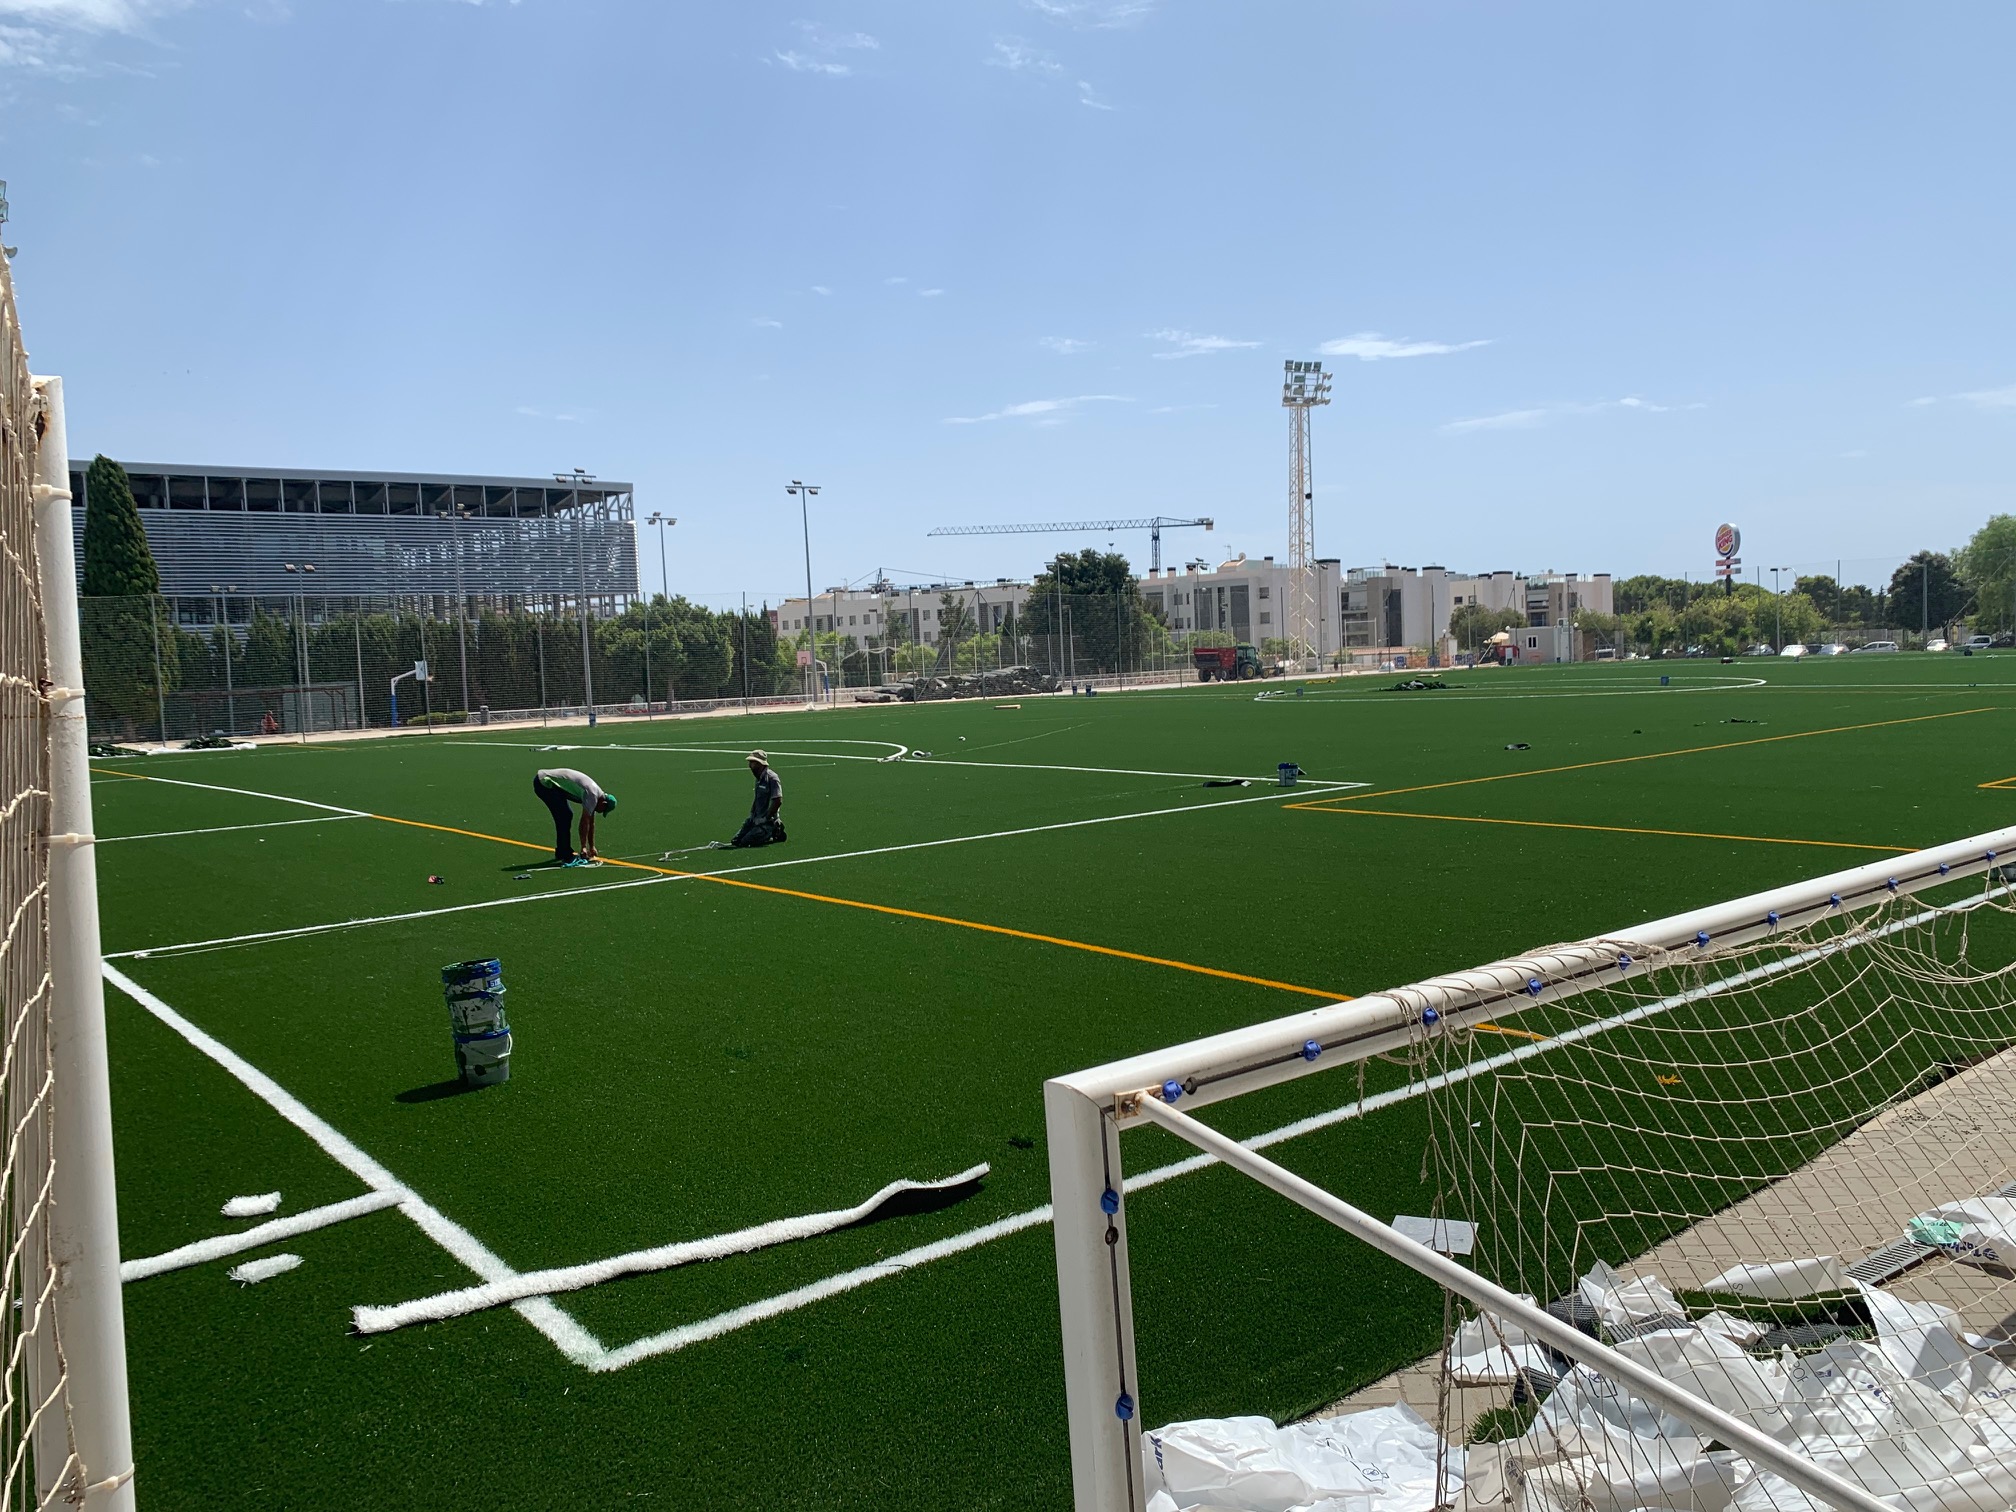 El Consell de Mallorca, a través de la Direcció Insular d’Esports, ha iniciat aquest mes d’agost el canvi de gespa del camp de futbol del poliesportiu de Sant Ferran.